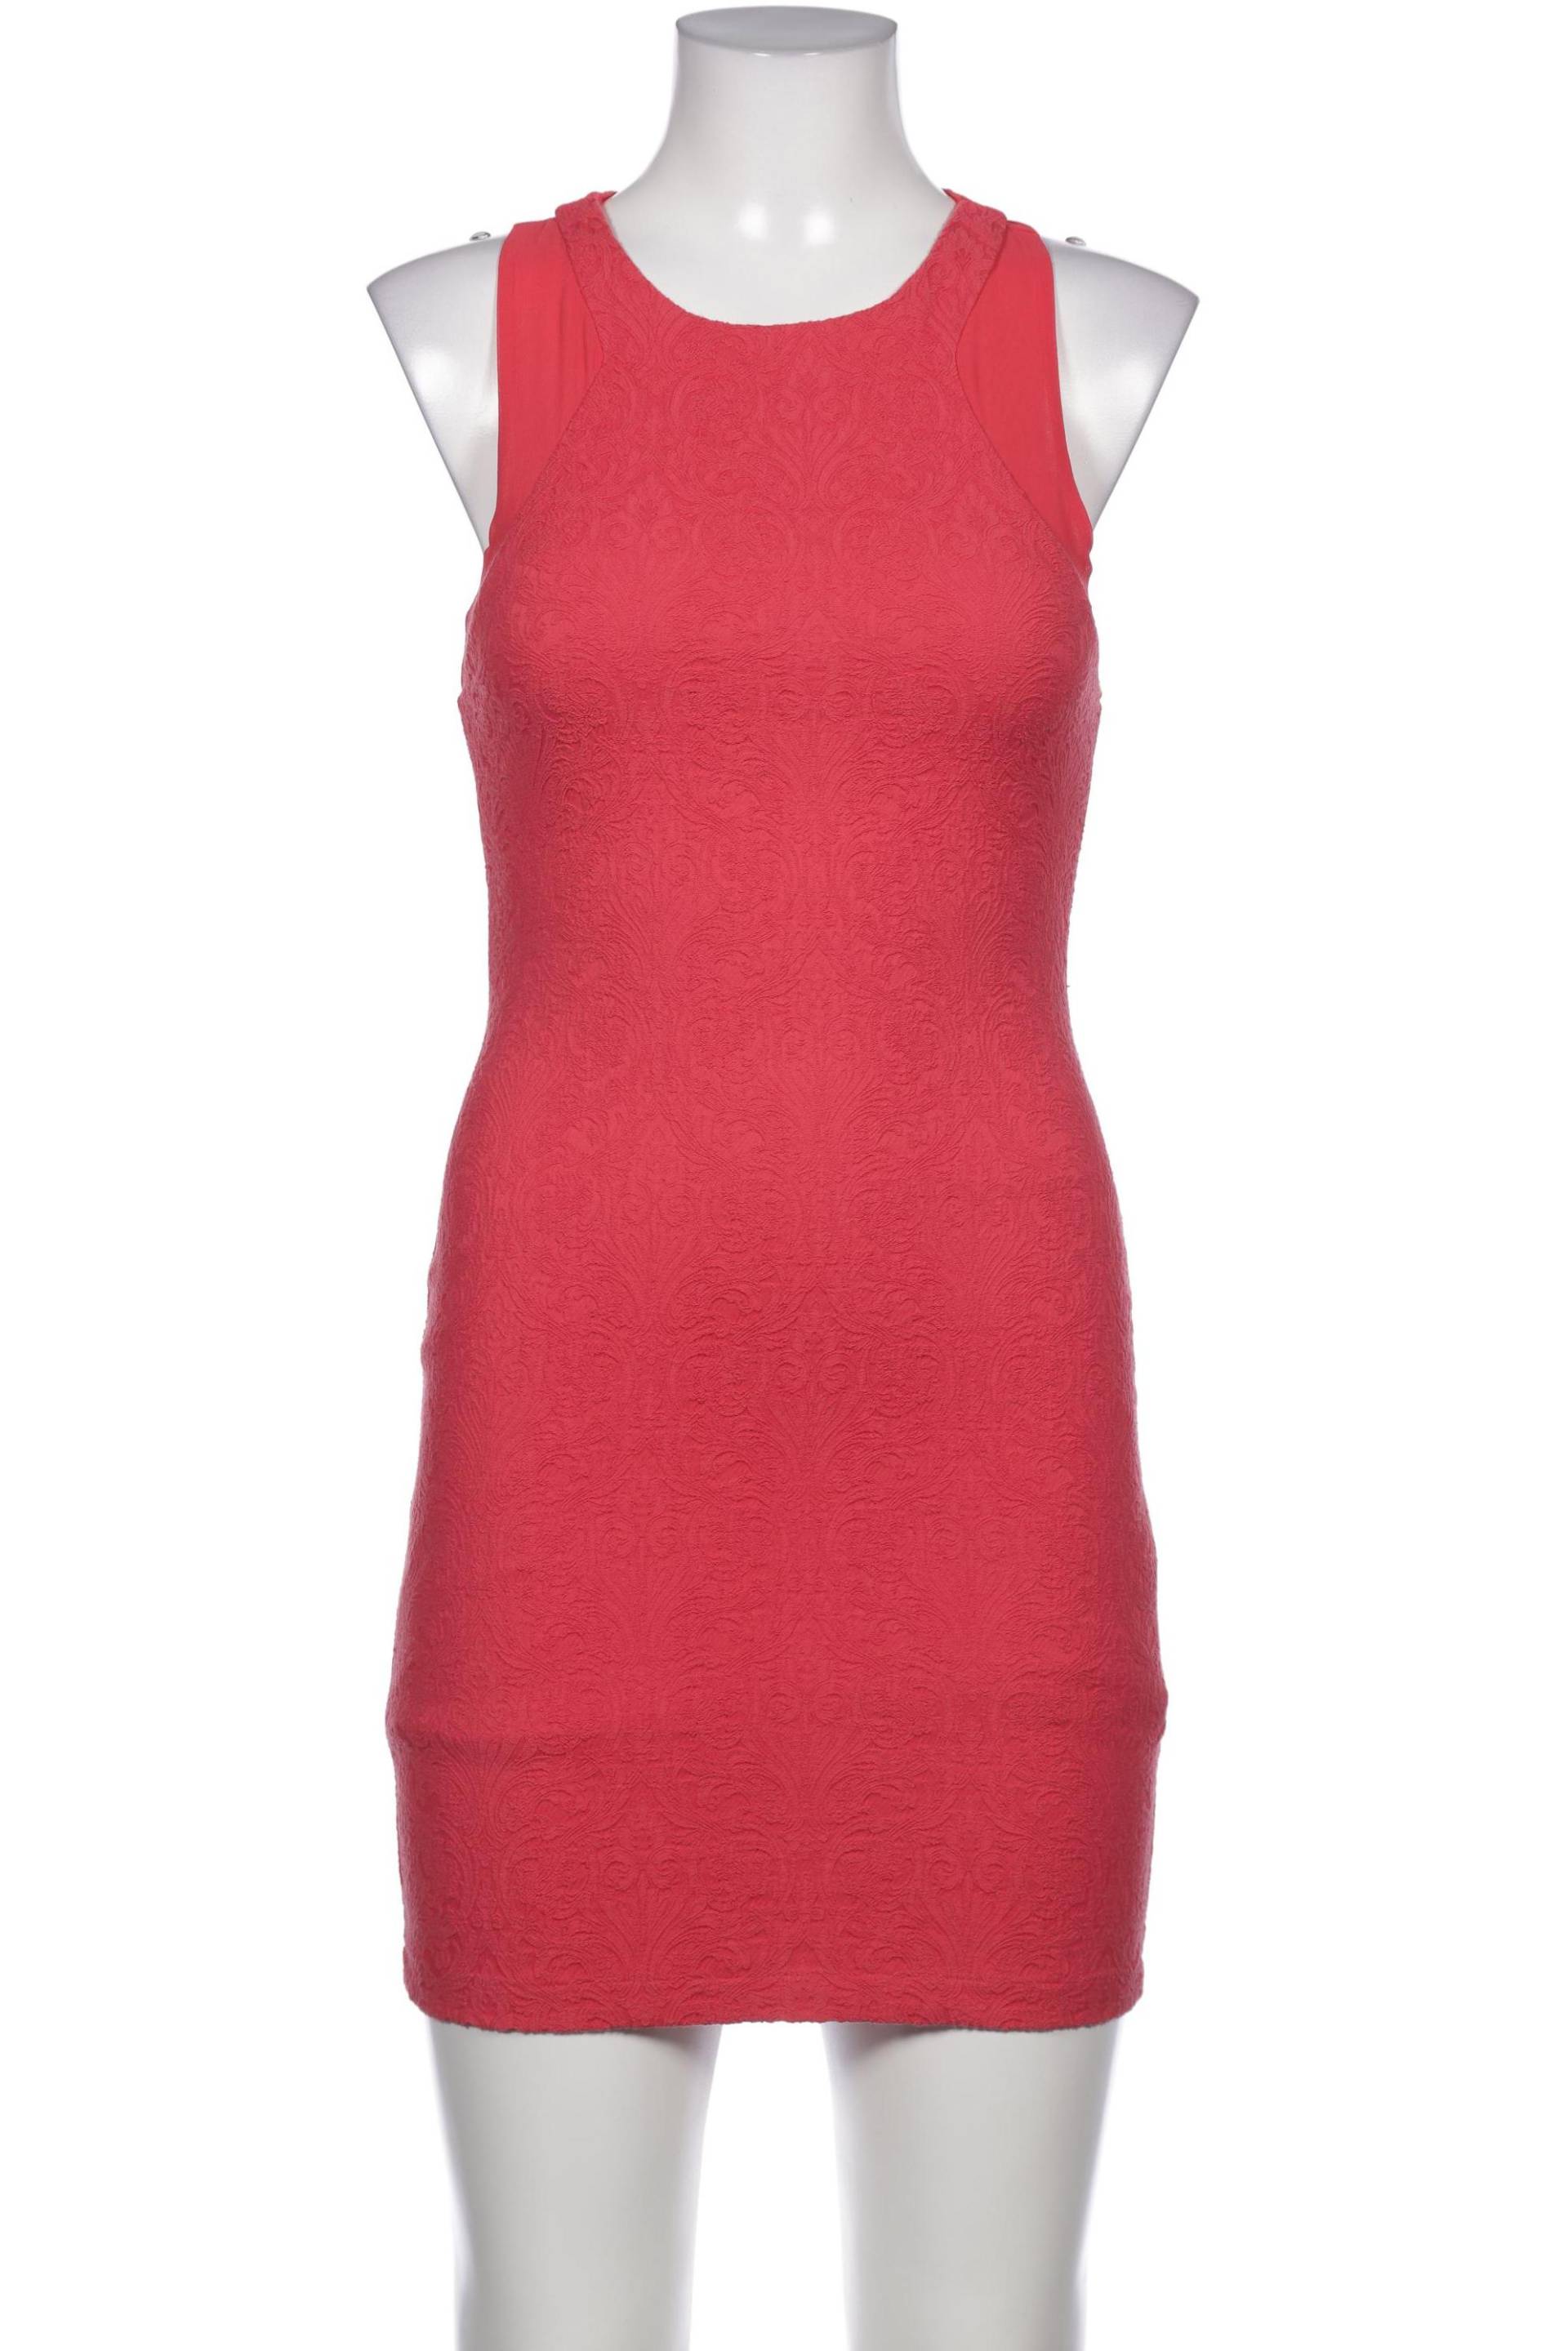 Zara Damen Kleid, rot, Gr. 38 von ZARA